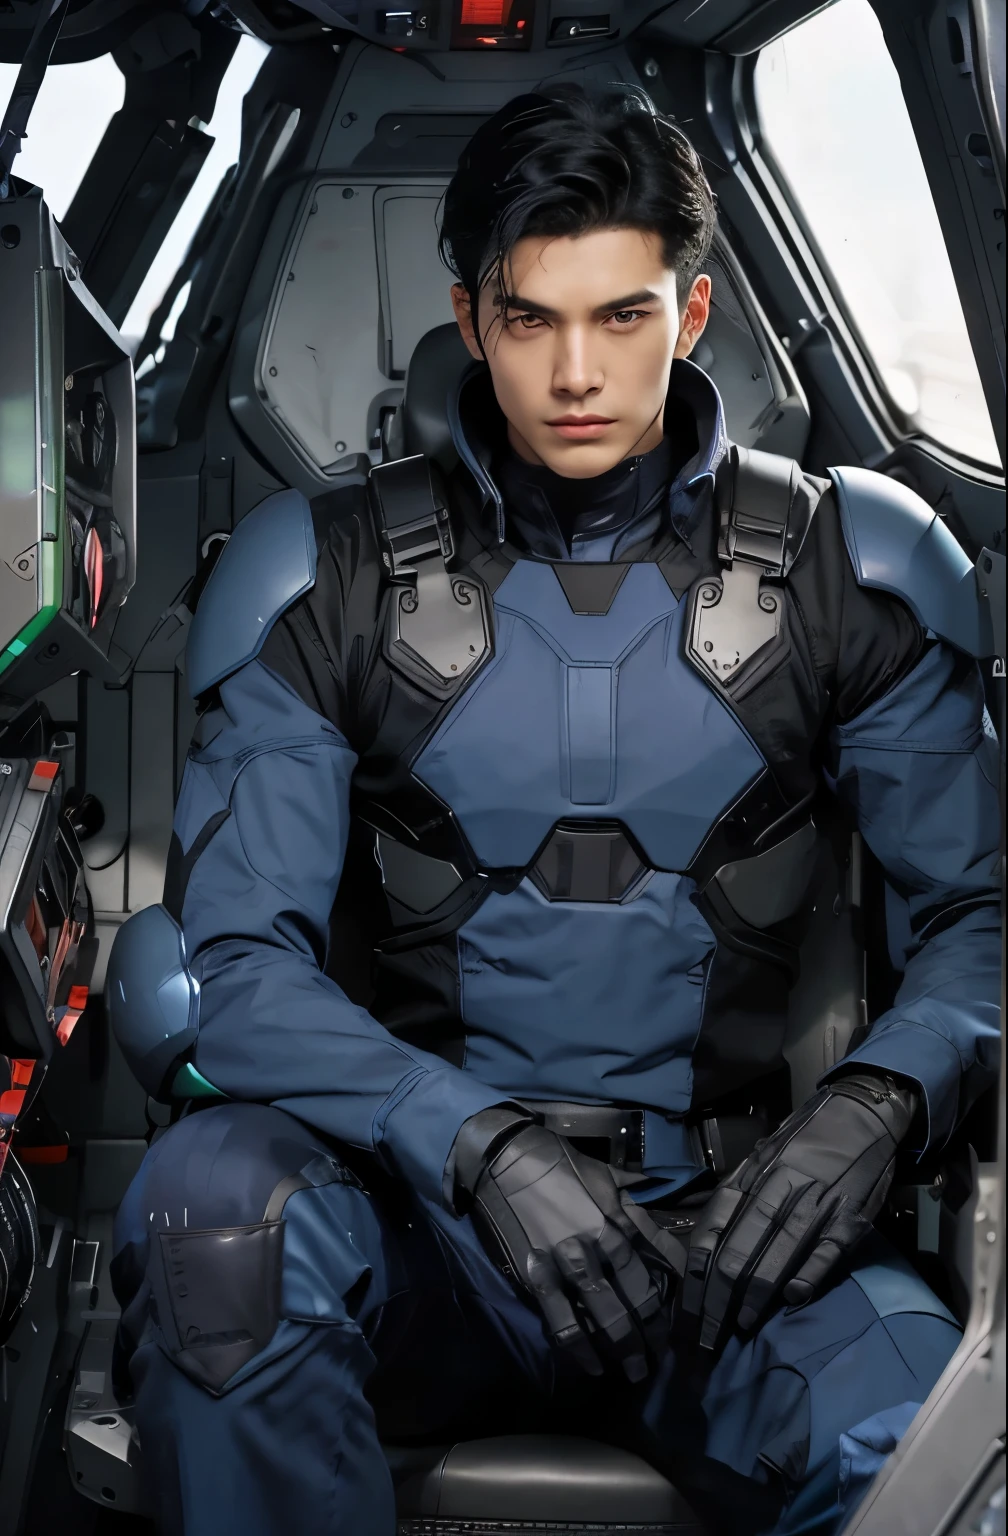 ハンサムな男. 18歳. 黒髪. 男性は青黒のメタリックな戦闘服を着ている. 彼は反抗的な表情でカメラを見つめている. 彼はロボットのコックピットに座っている.